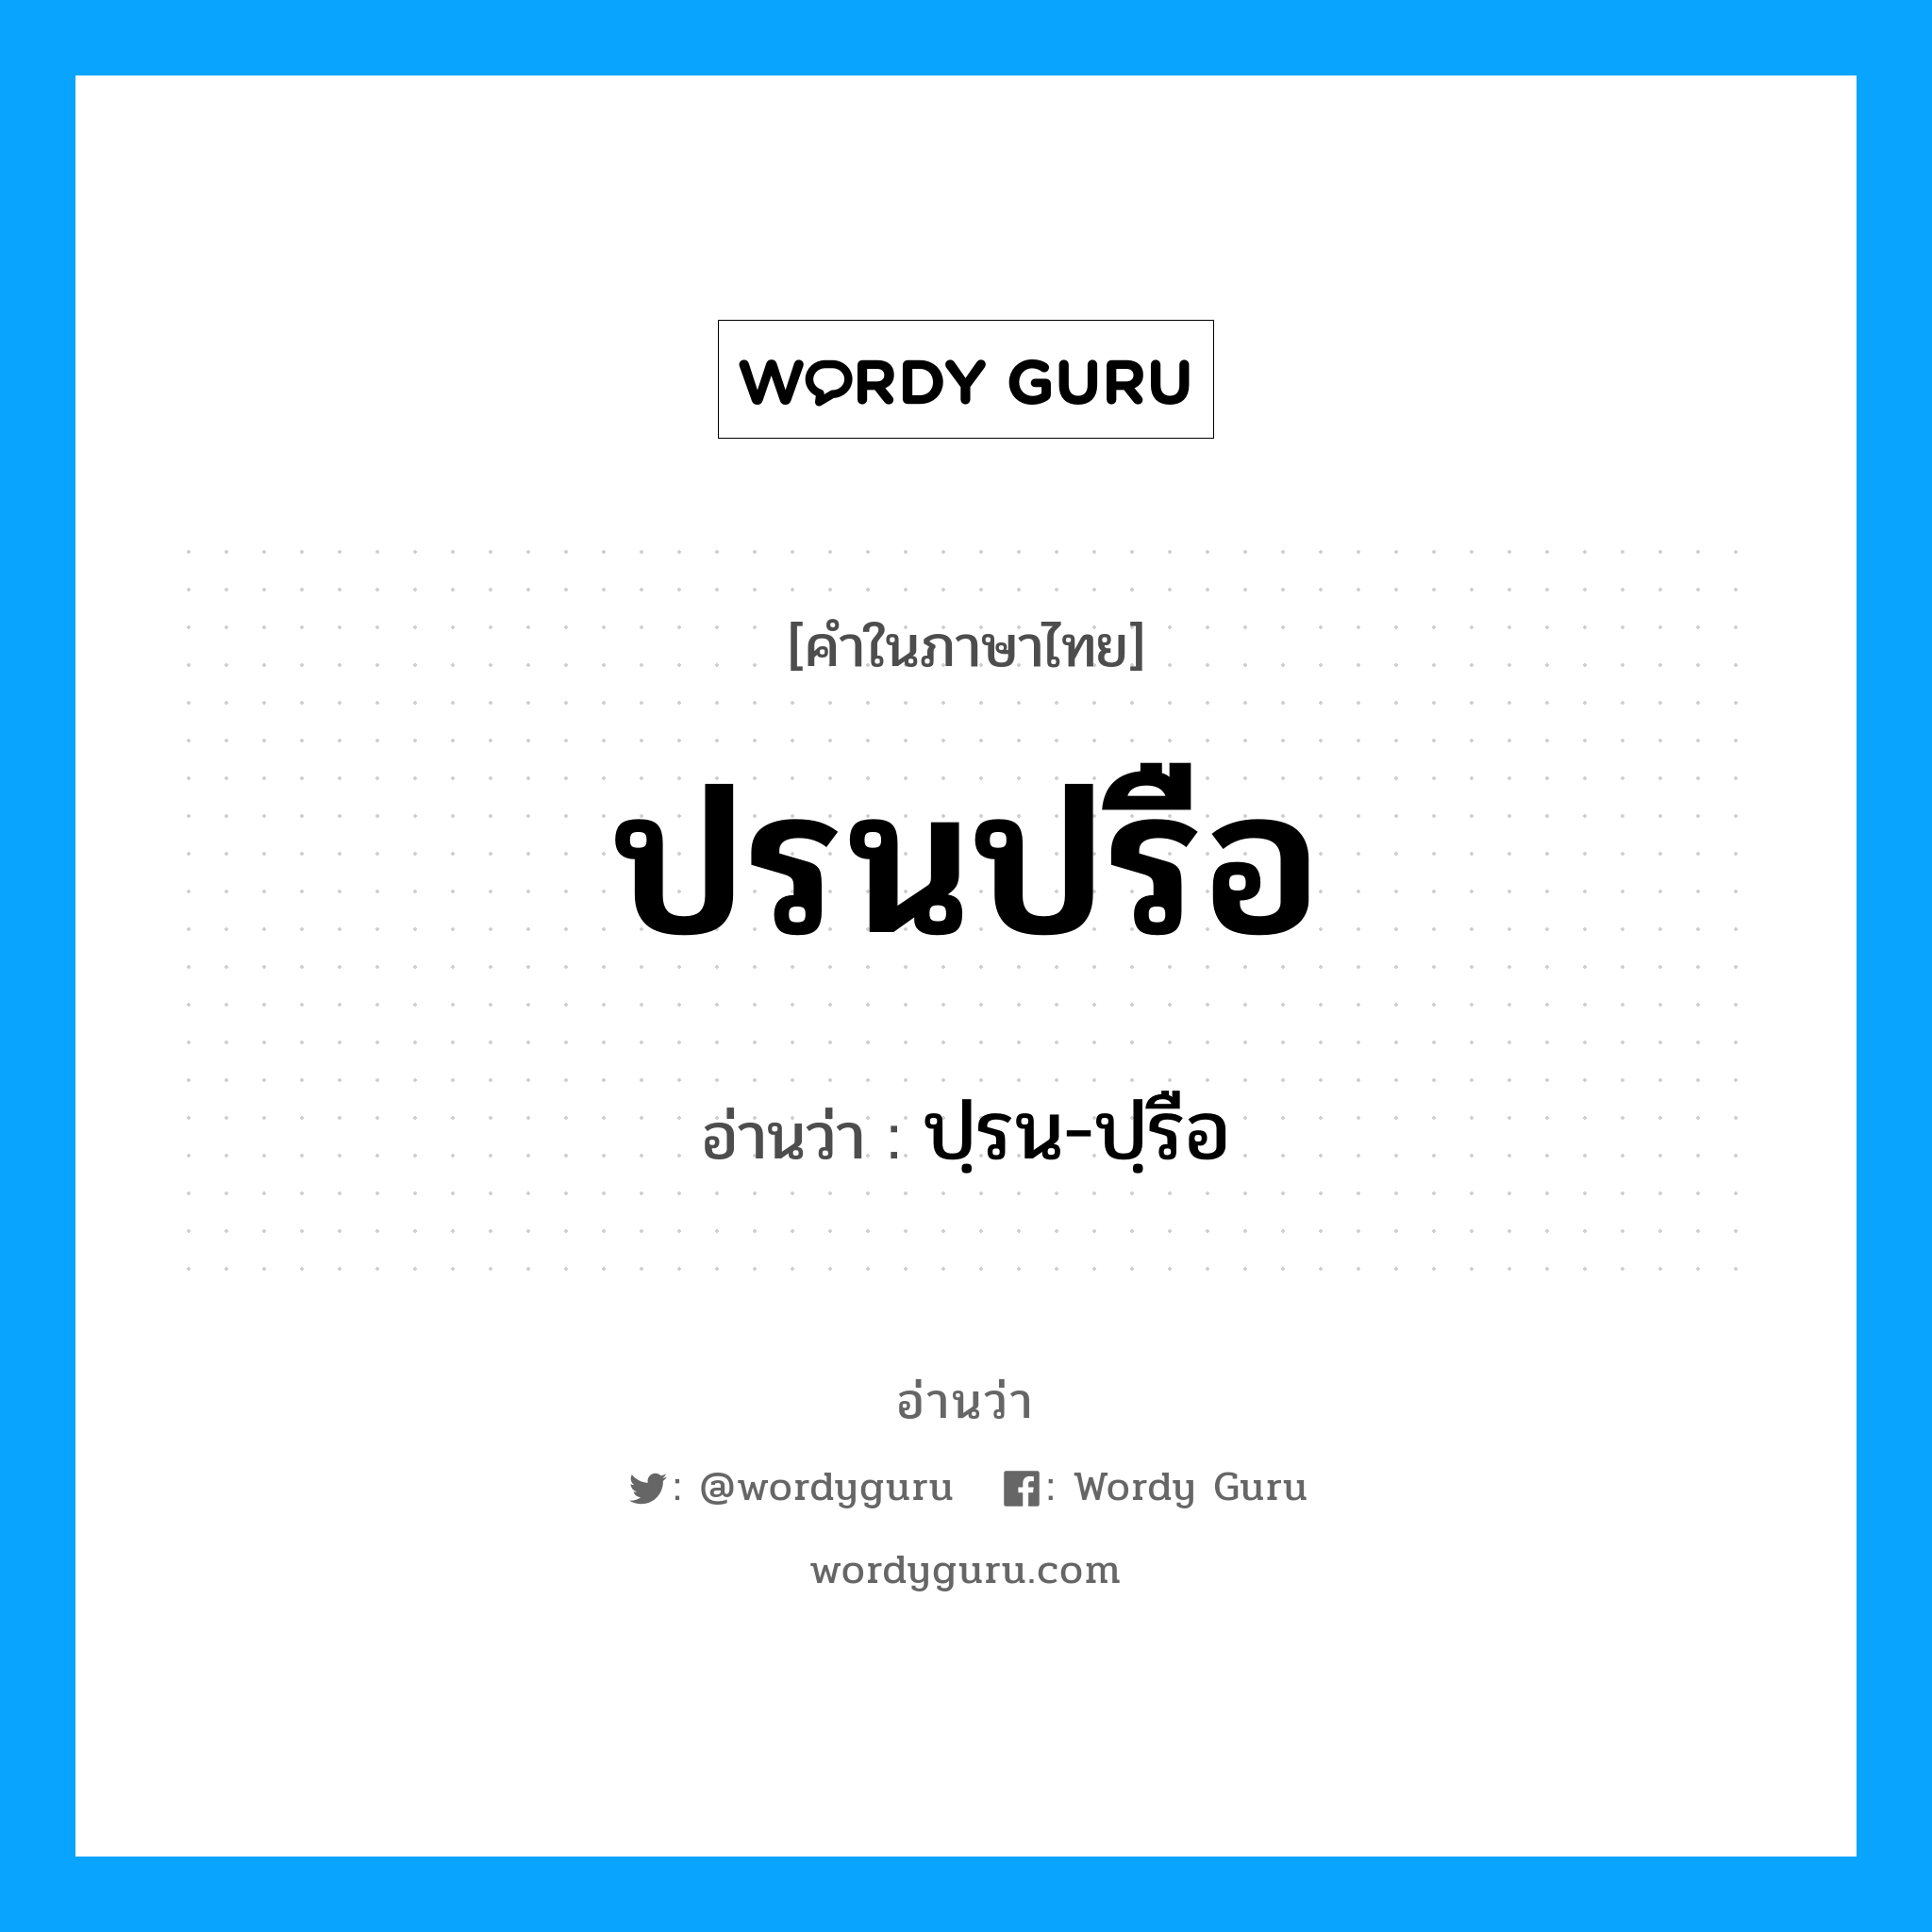 ปฺรน-ปฺรือ เป็นคำอ่านของคำไหน?, คำในภาษาไทย ปฺรน-ปฺรือ อ่านว่า ปรนปรือ